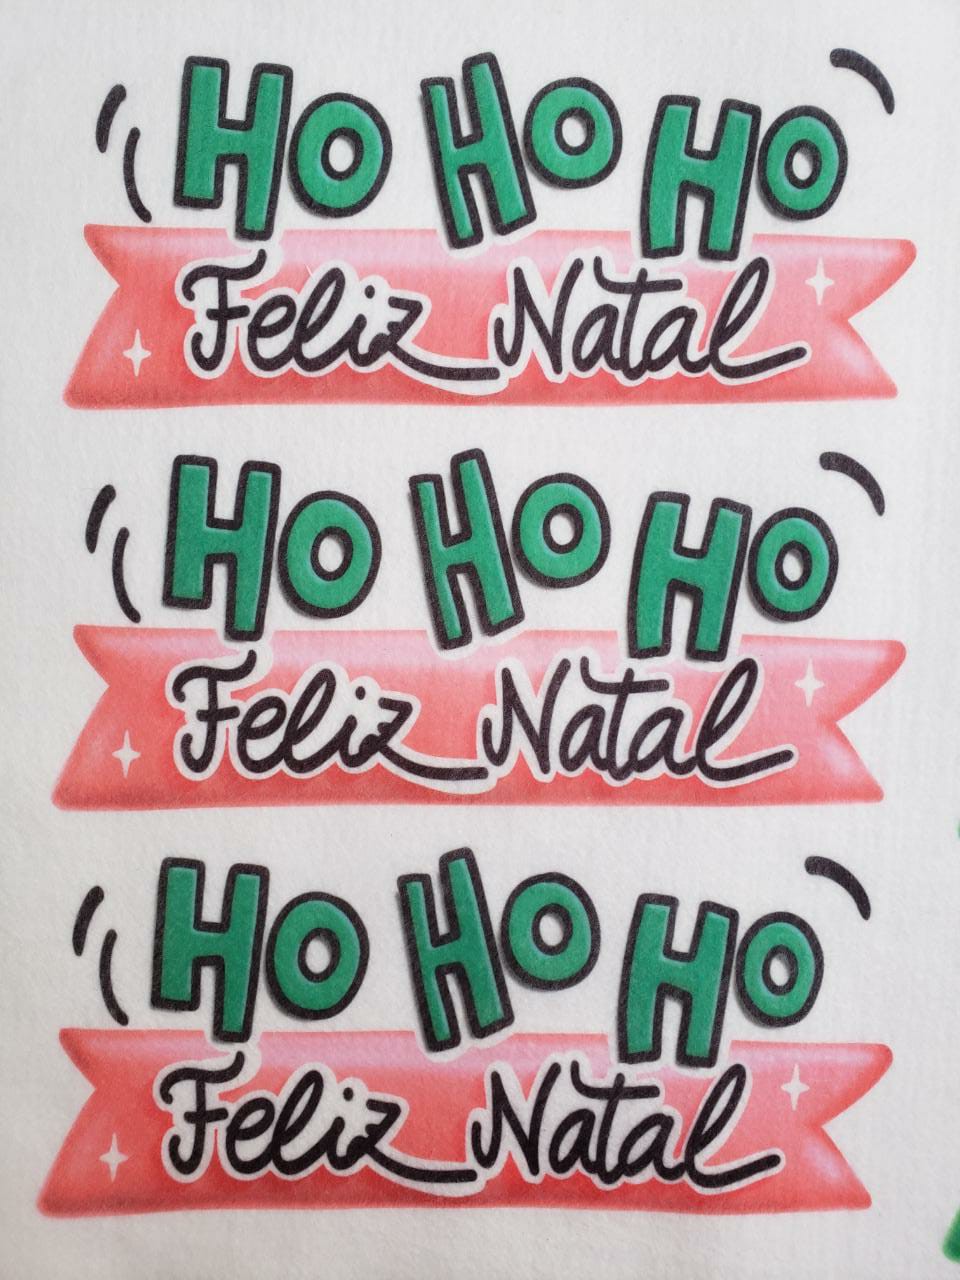 Feliz Natal - Ho Ho Ho *-*